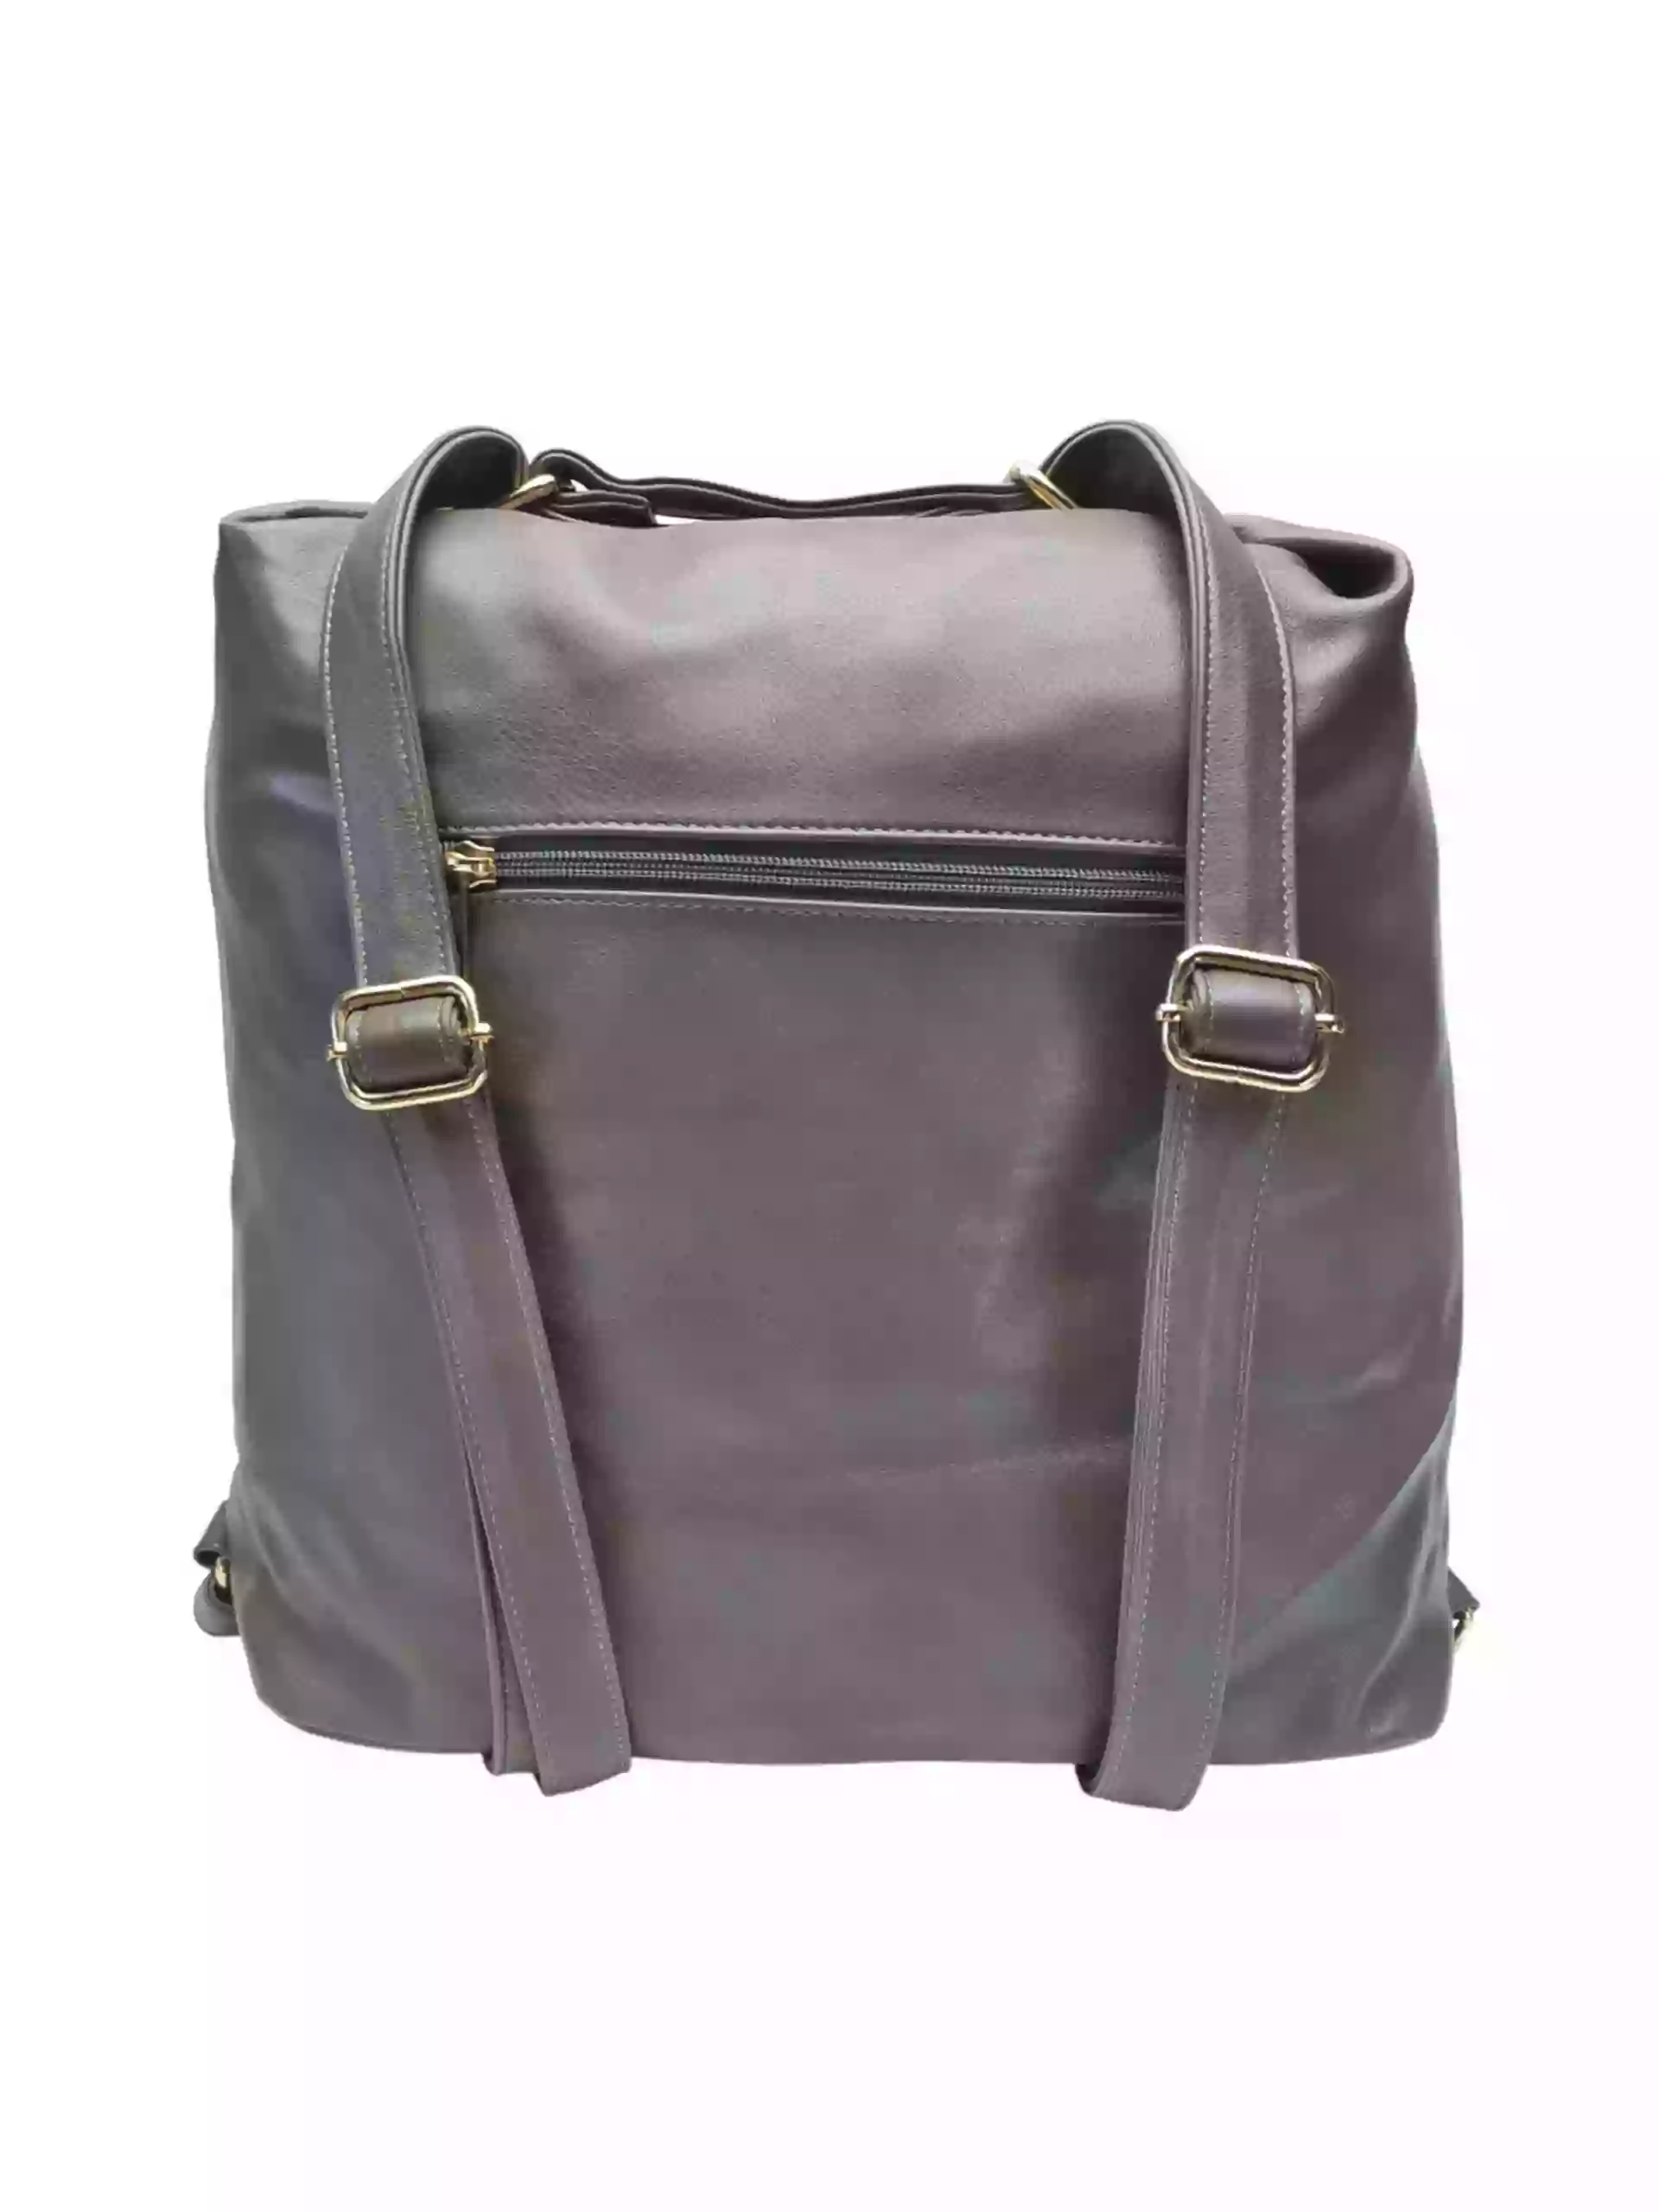 Prostorný šedohnědý kabelko-batoh 2v1 s přední kapsou, Caely, Q3071, zadní strana kabelko-batohu 2v1 s popruhy